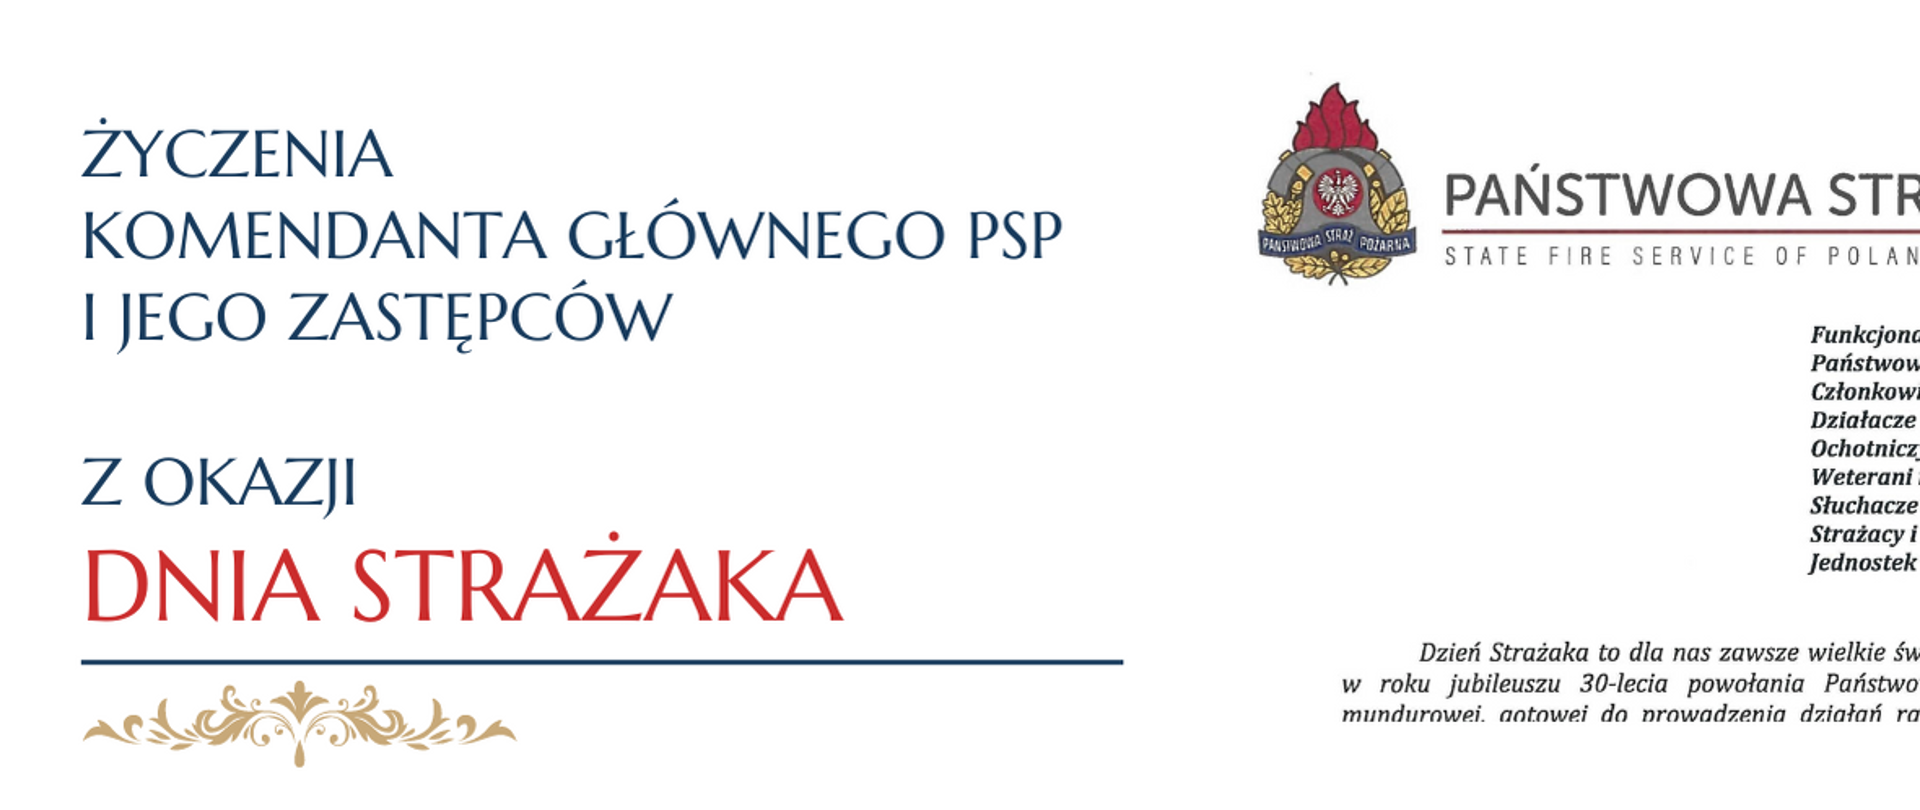 Życzenia KG PSP z okazji Dnia Strażaka - baner